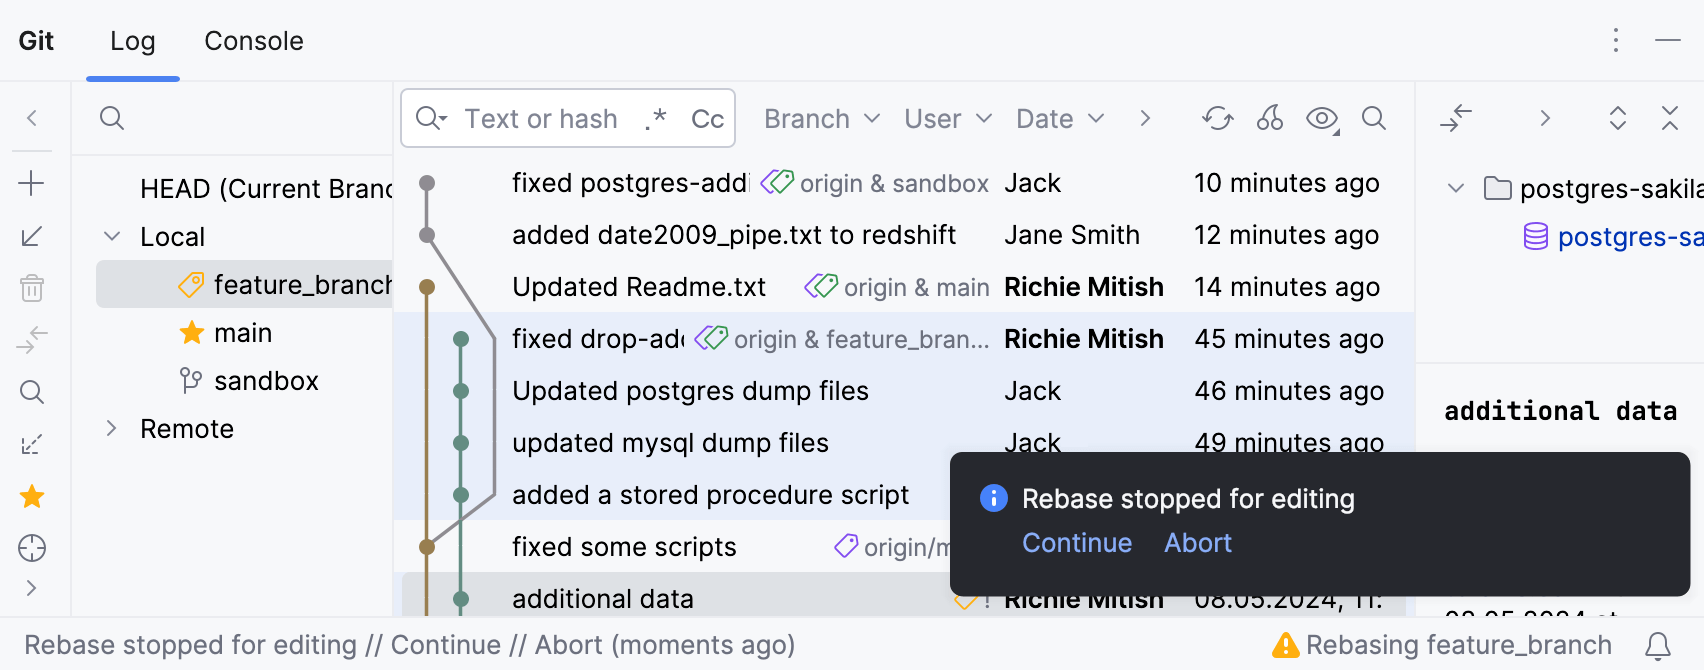 The rebase status notification